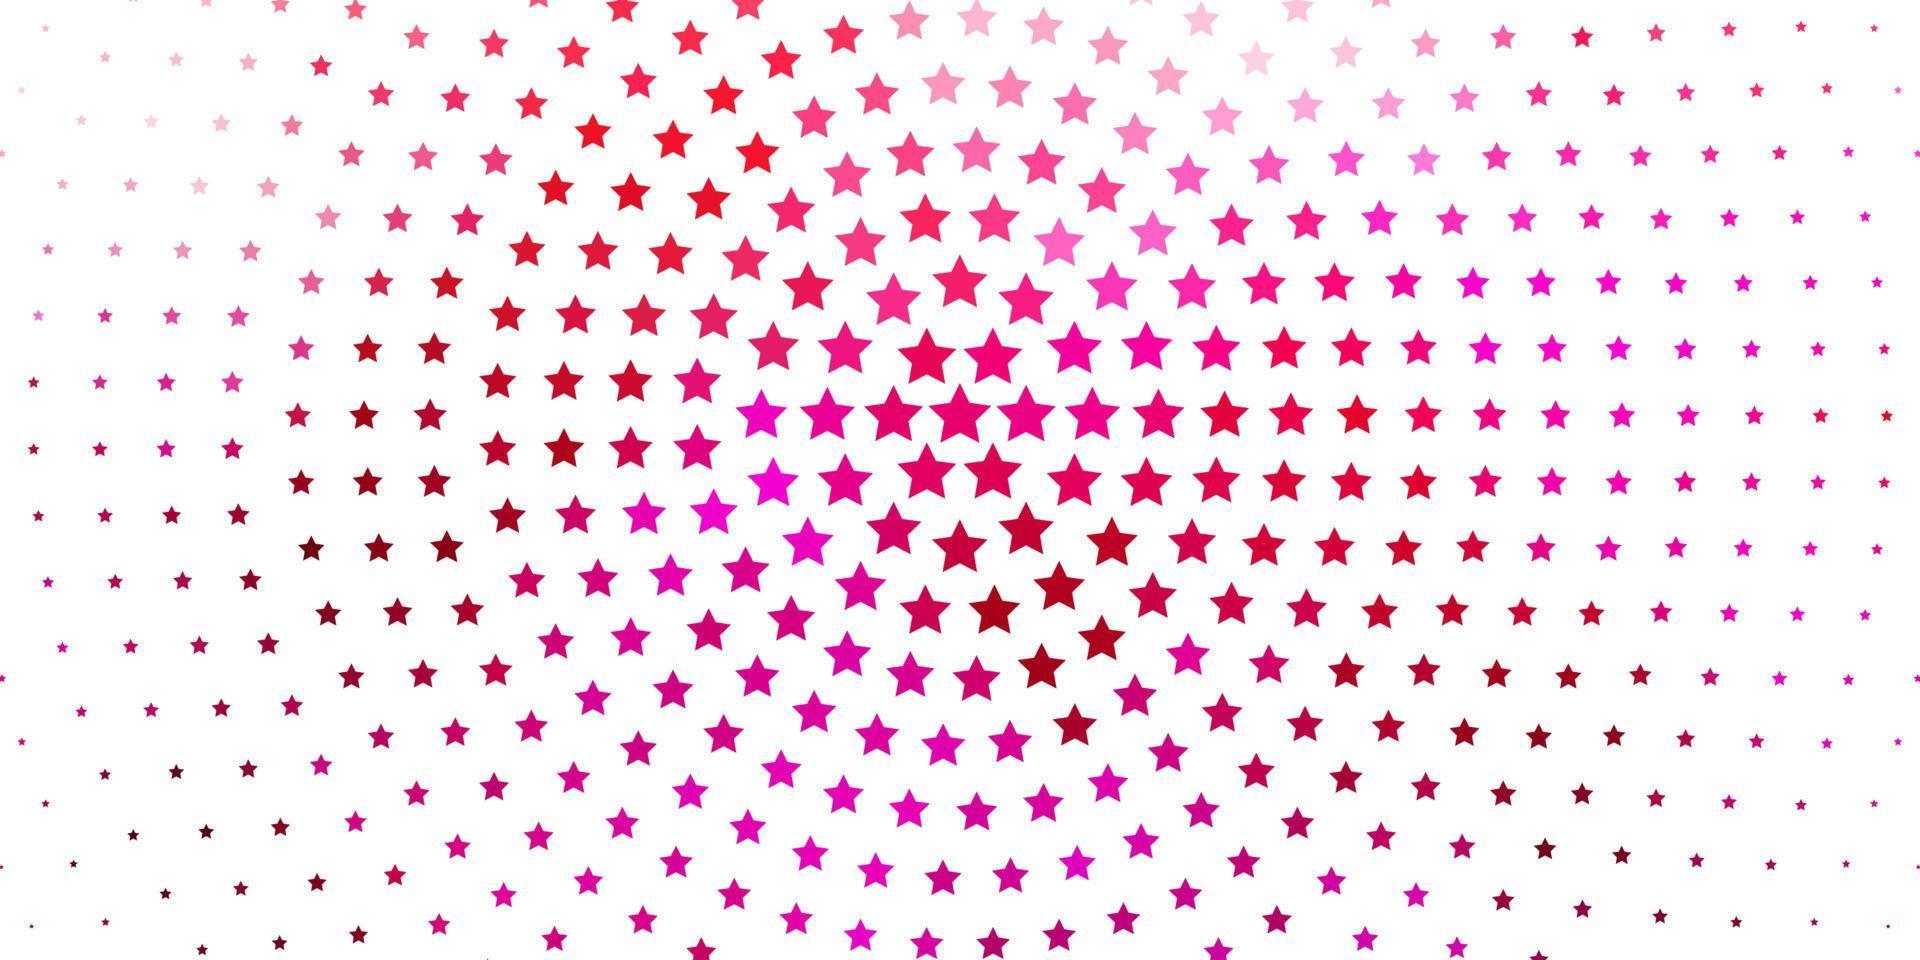 modèle vectoriel rose clair avec des étoiles abstraites.